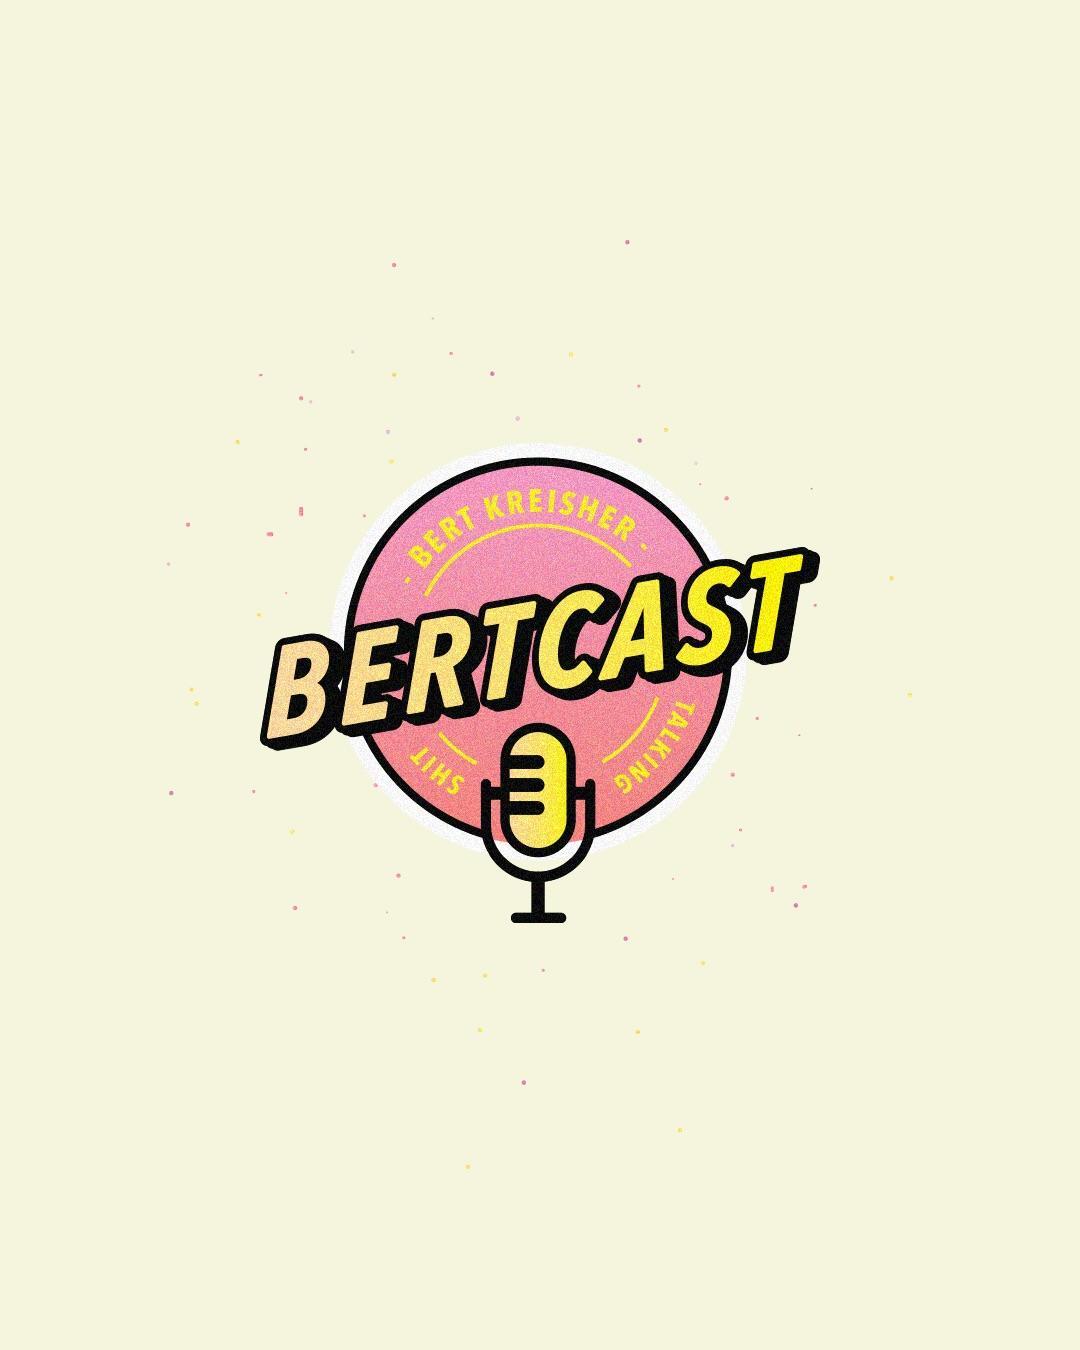 Podcast Logo - Bert Kreisher podcast logo : graphic_design